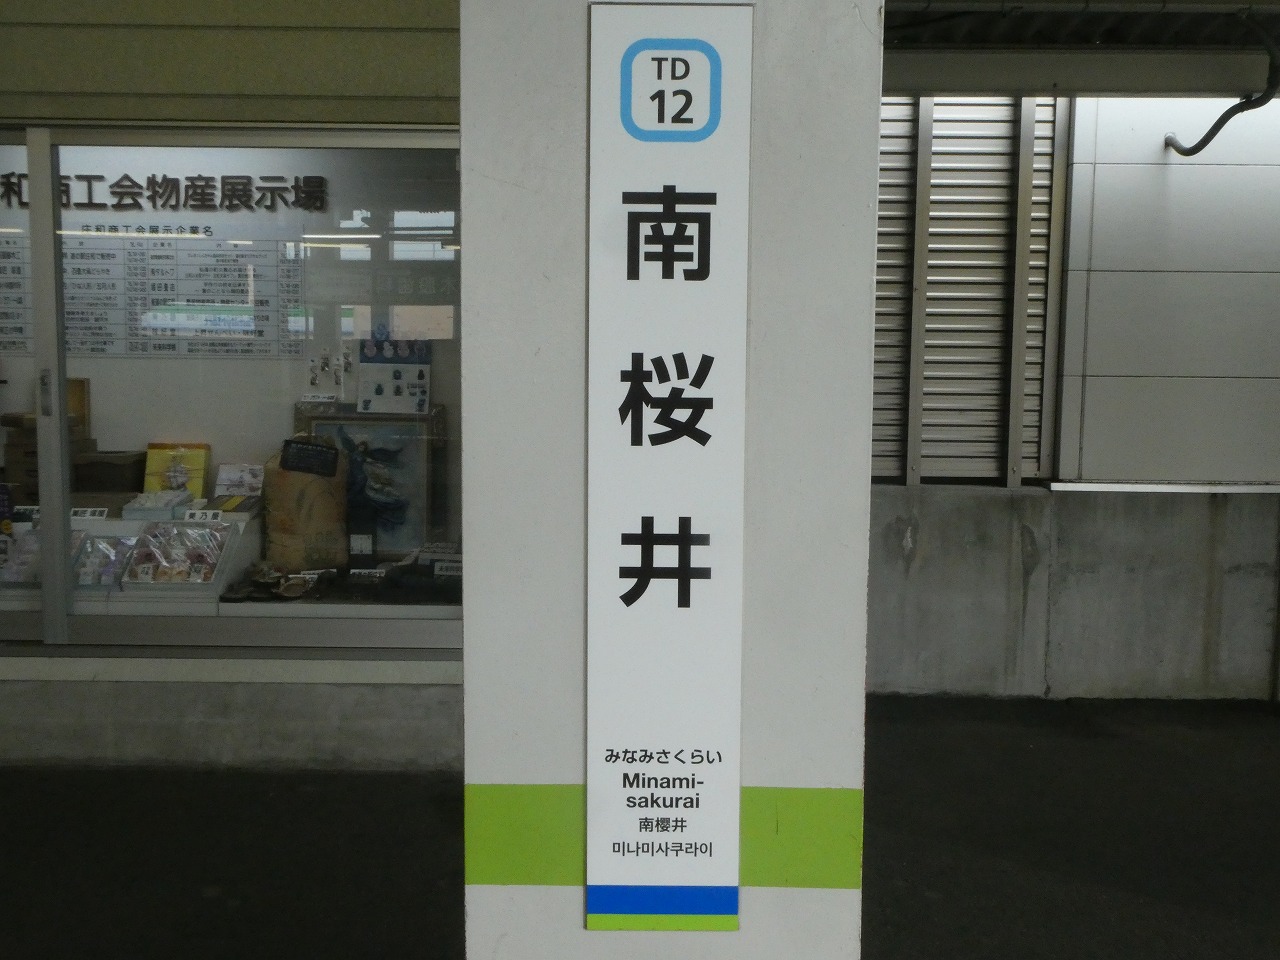 縦型の駅名標